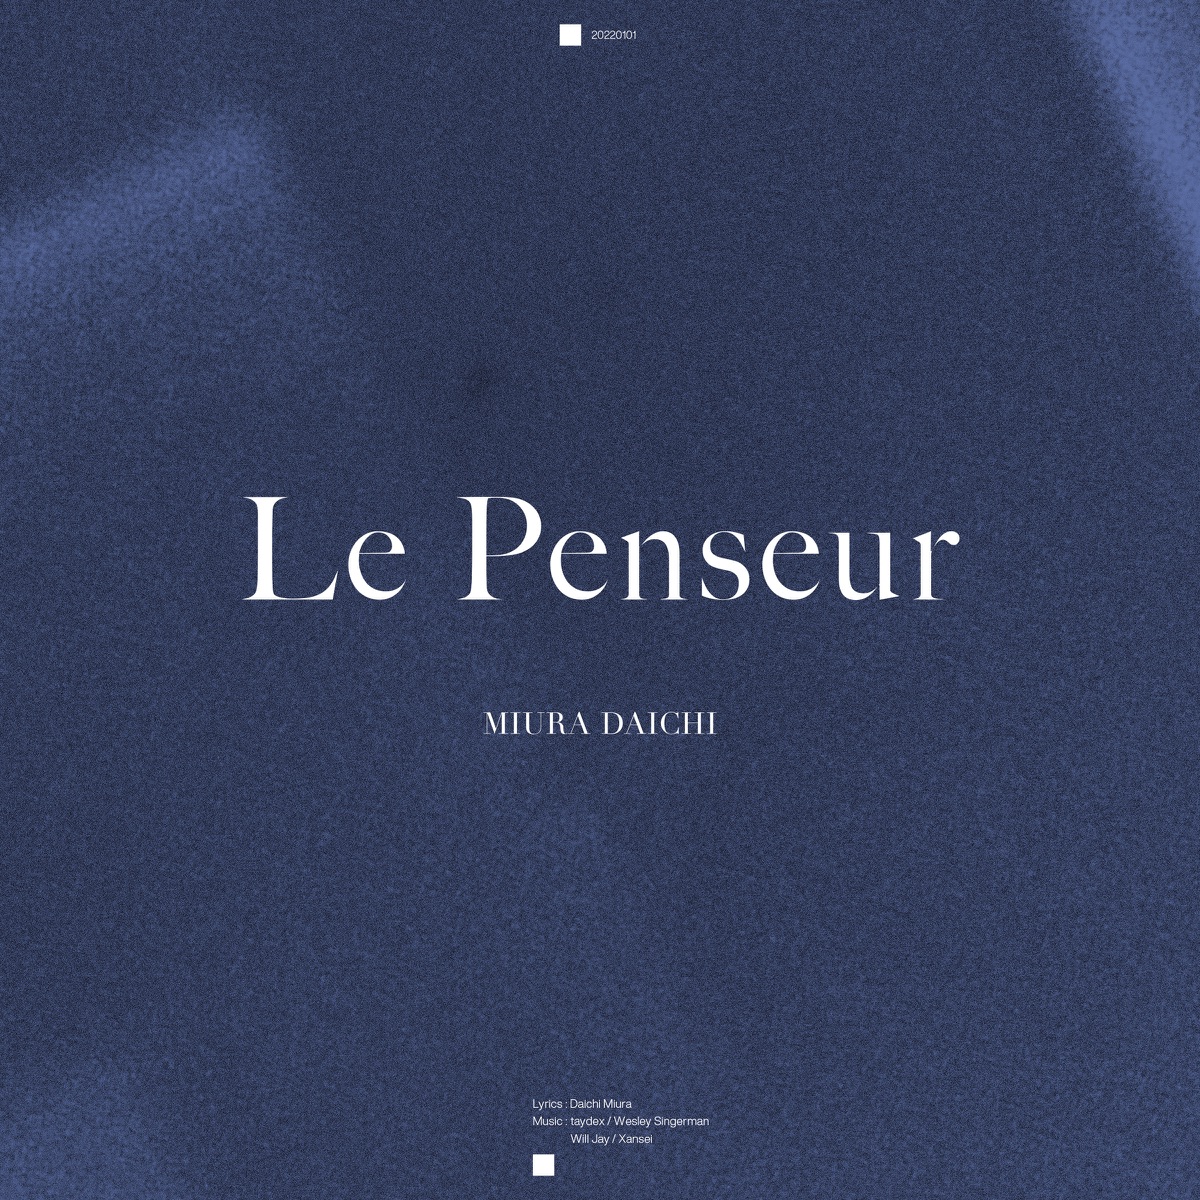 『三浦大知 - Le Penseur』収録の『Le Penseur』ジャケット